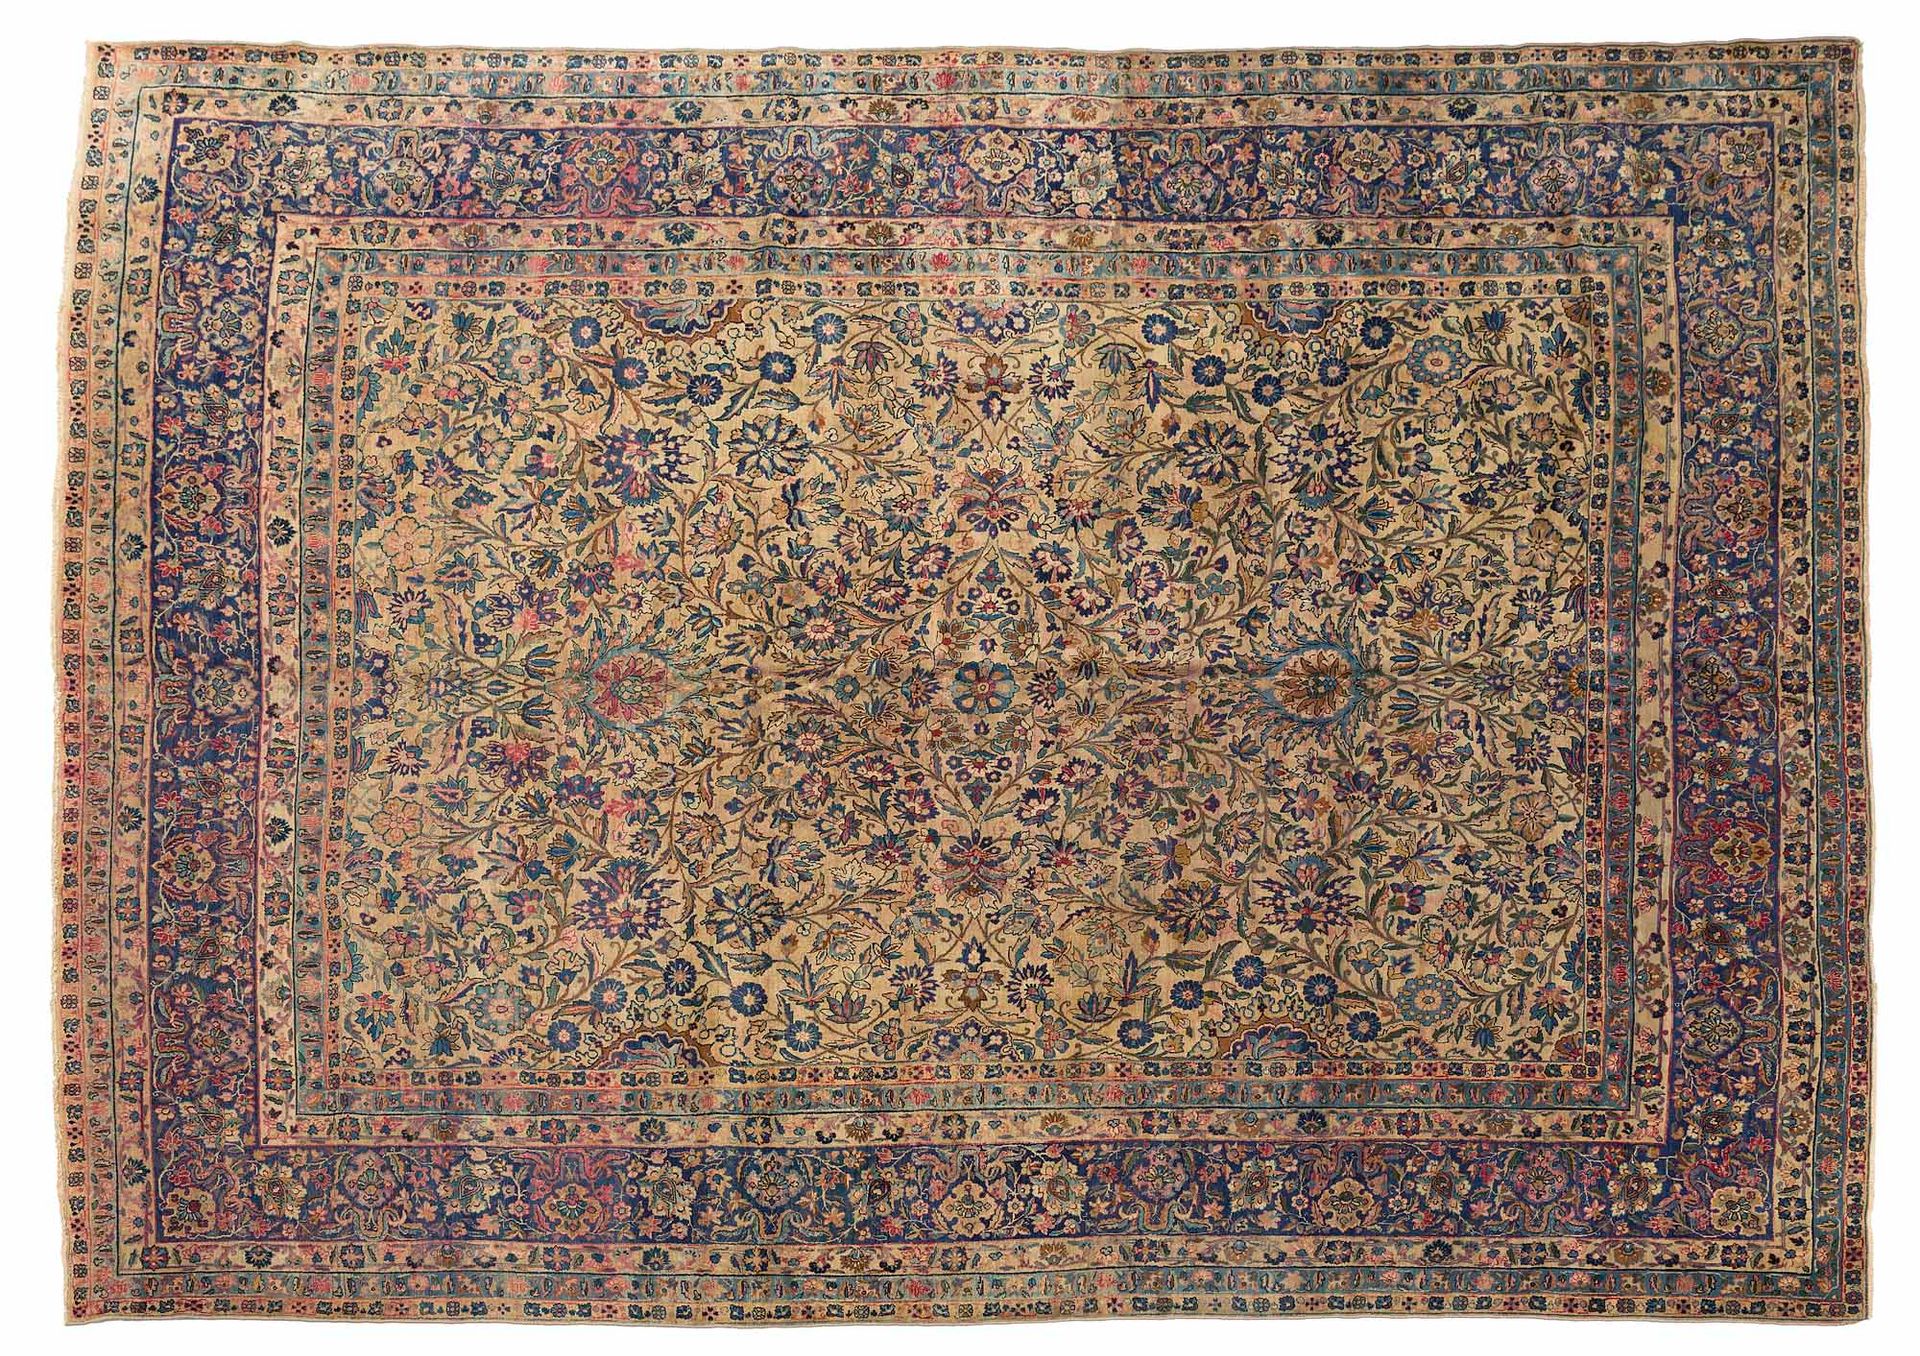 Null 基尔曼地毯（波斯），20世纪前三分之一时期

尺寸：360 x 290厘米。

技术特点 : 羊毛丝绒，棉质基础。

一个象牙领域被用作支持纠缠在一起&hellip;